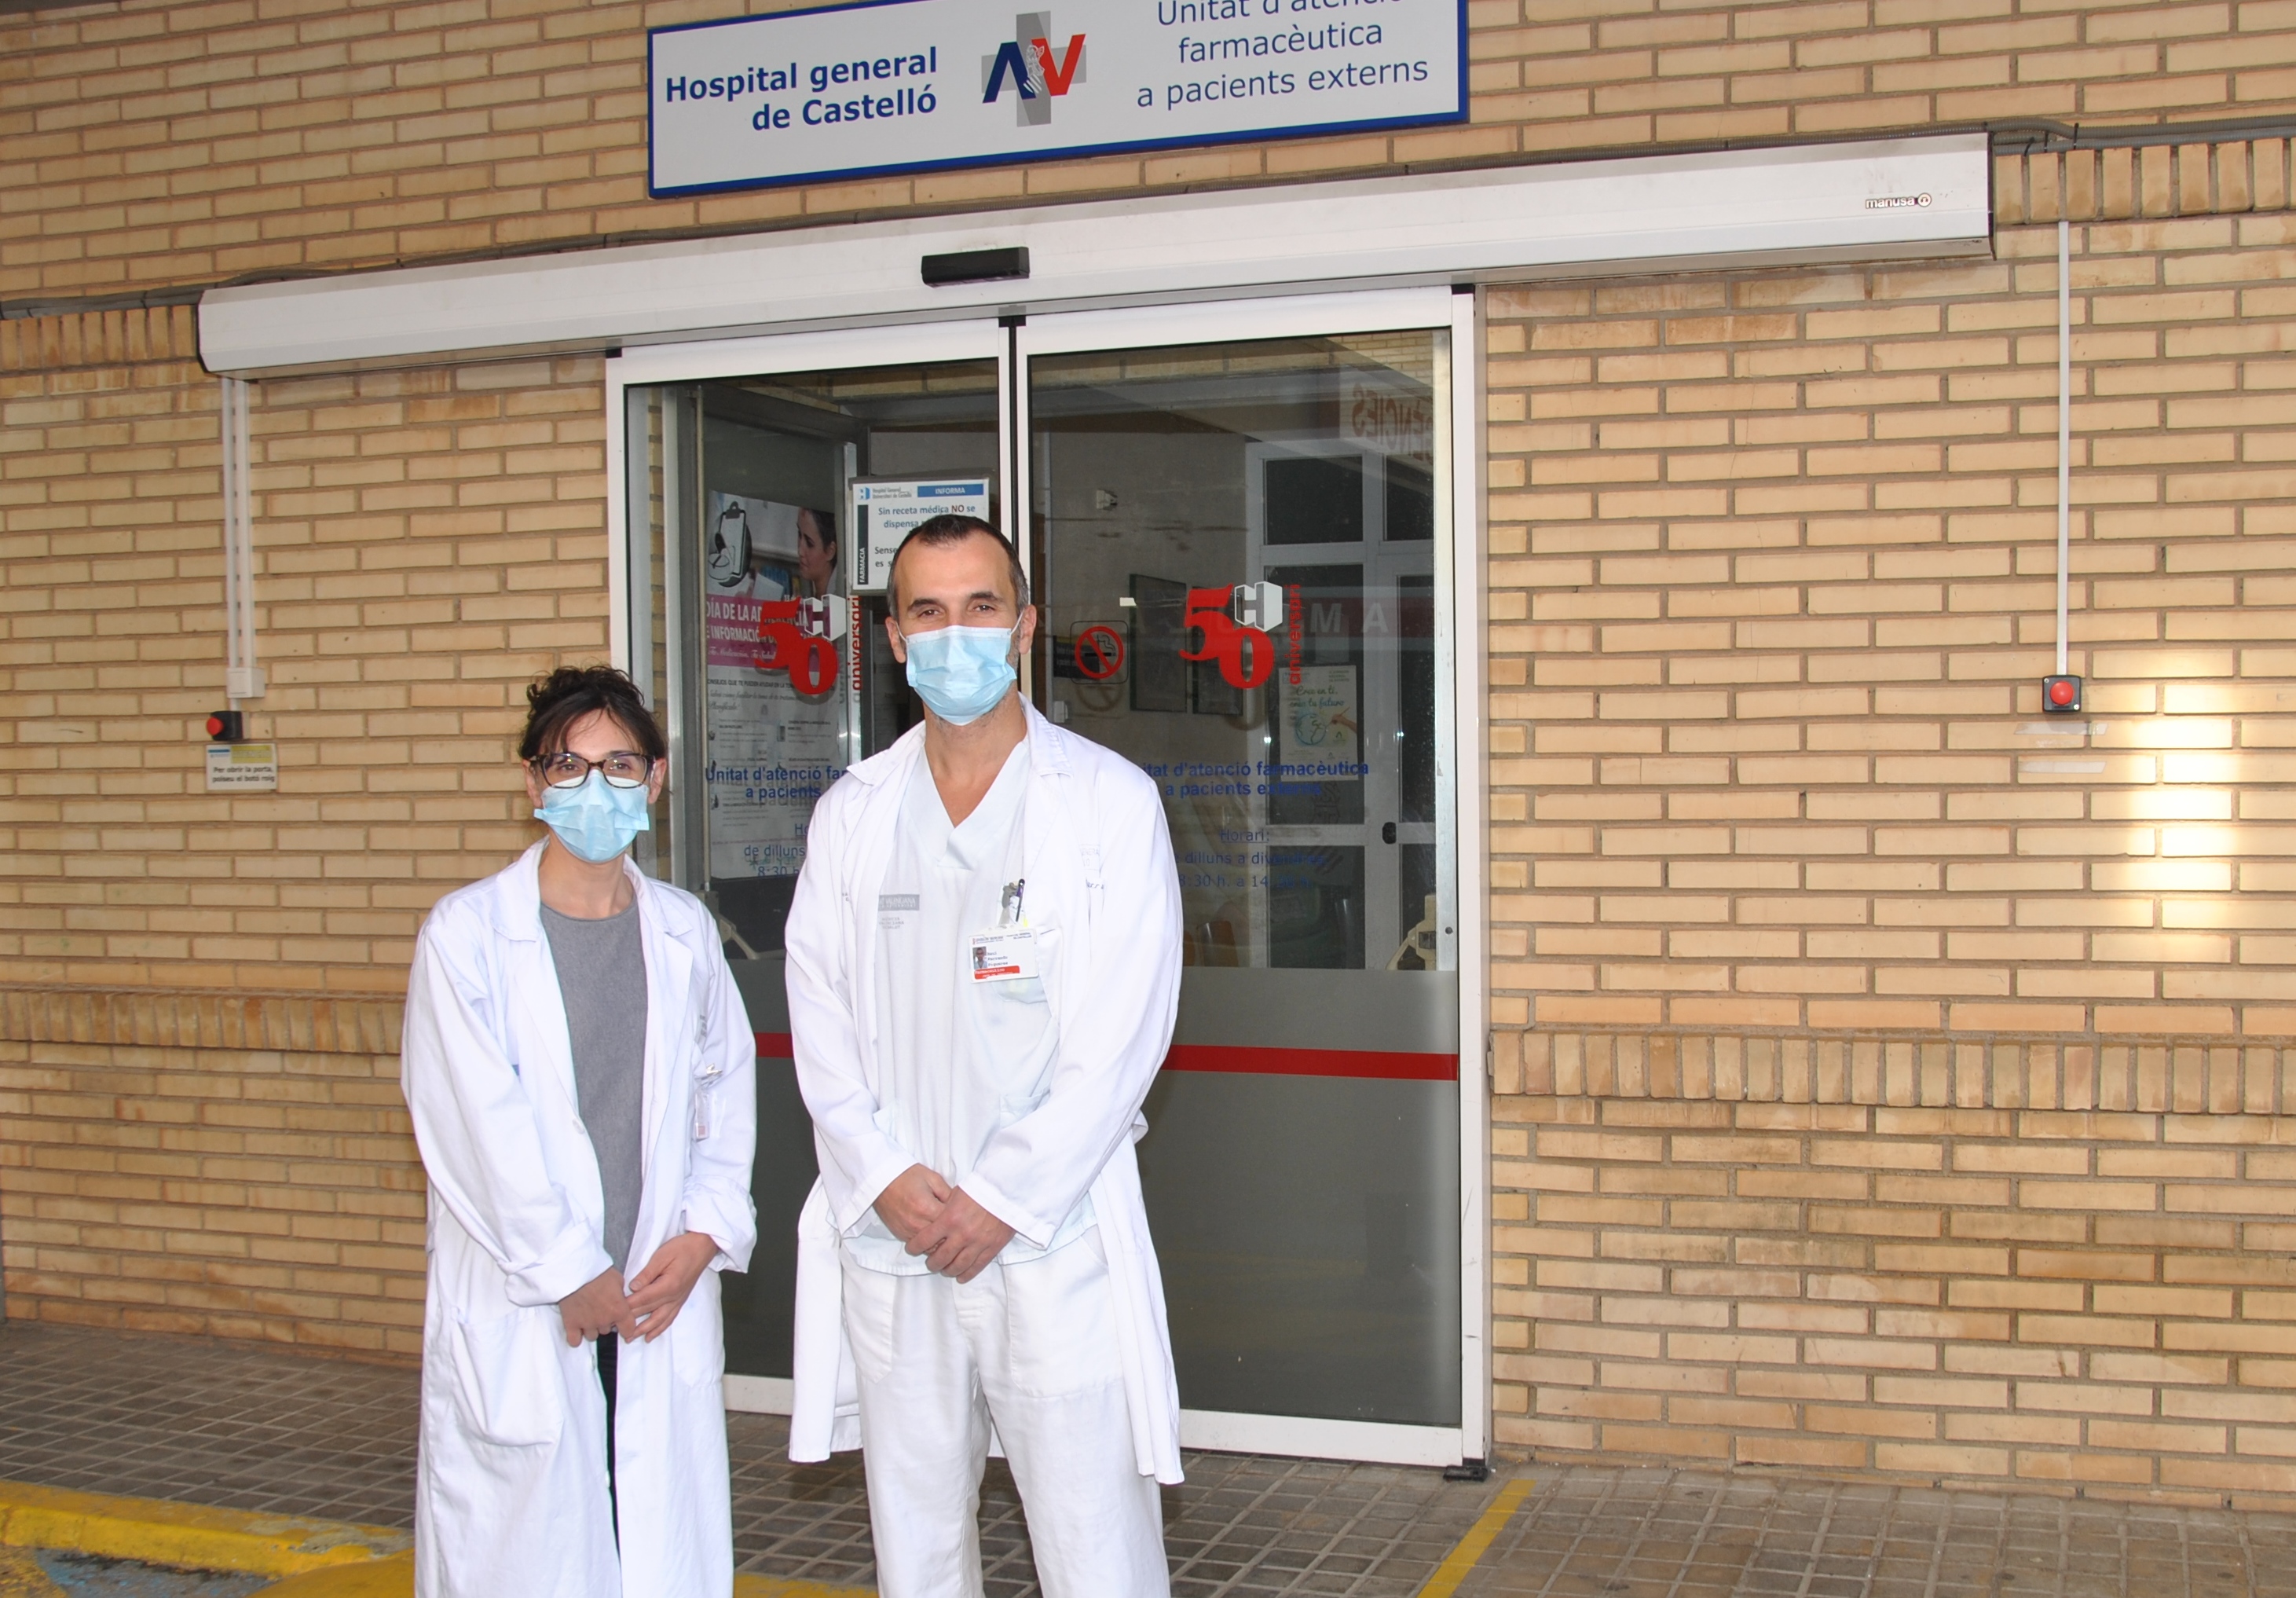 Una mujer y un hombre, especialistas en Farmacia Hospitalaria, junto a la puerta de acceso de la Unidad farmaceútica de atención a pacientes externos del Hospital General Universitario de Castellón